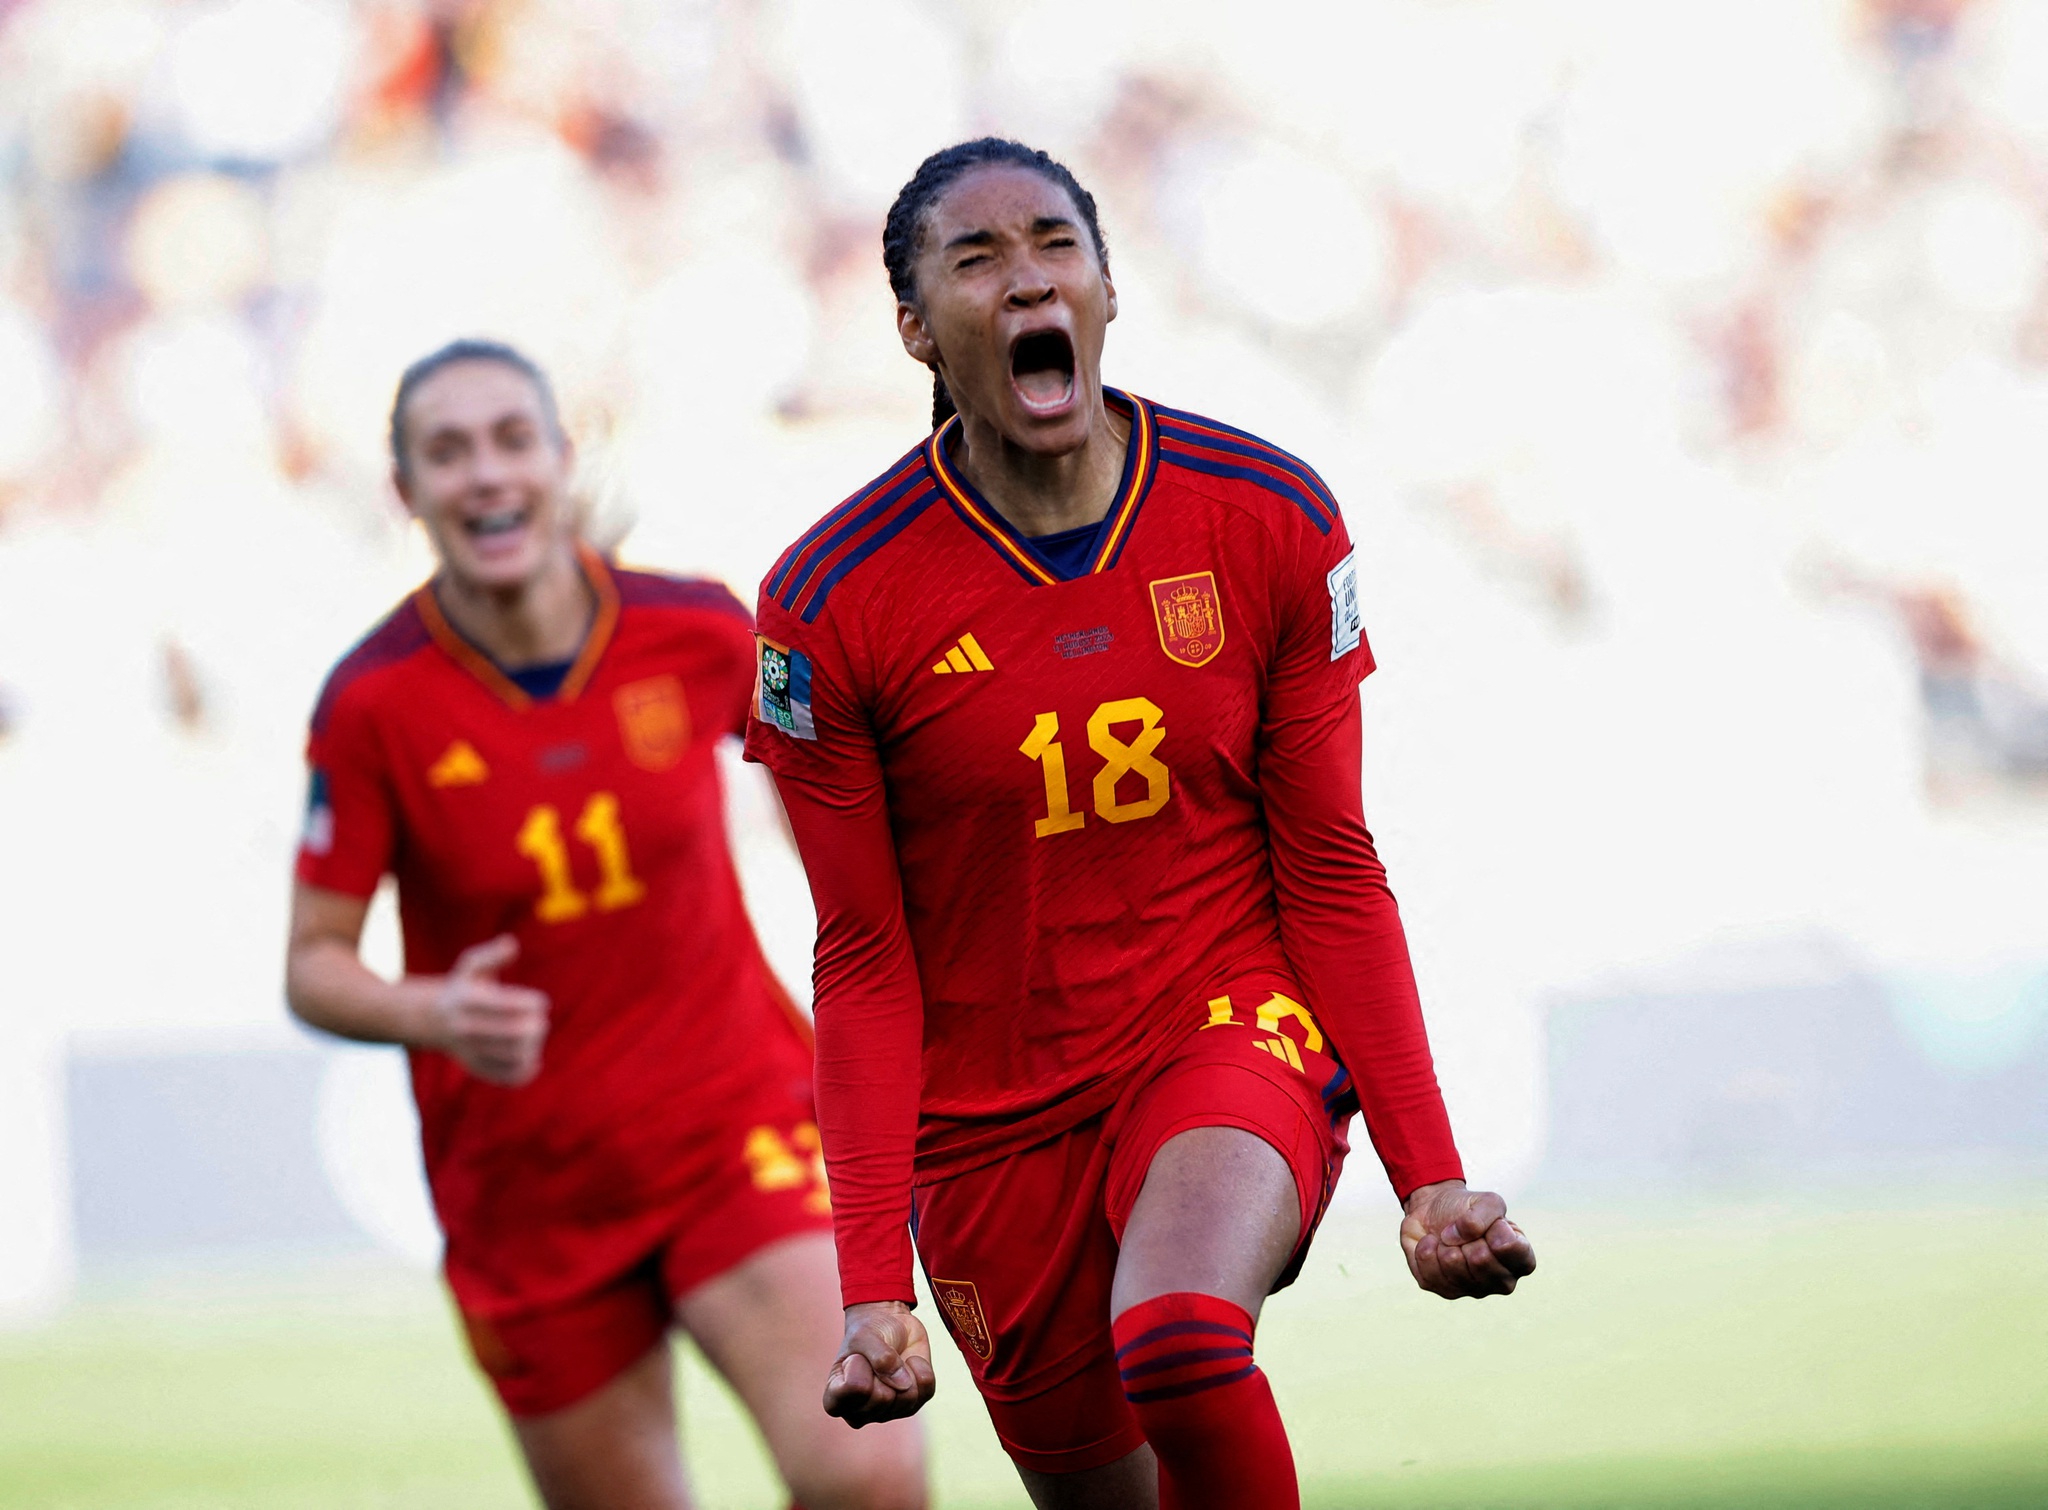 Mundial deu impulso decisivo a Portugal - Seleção Feminina